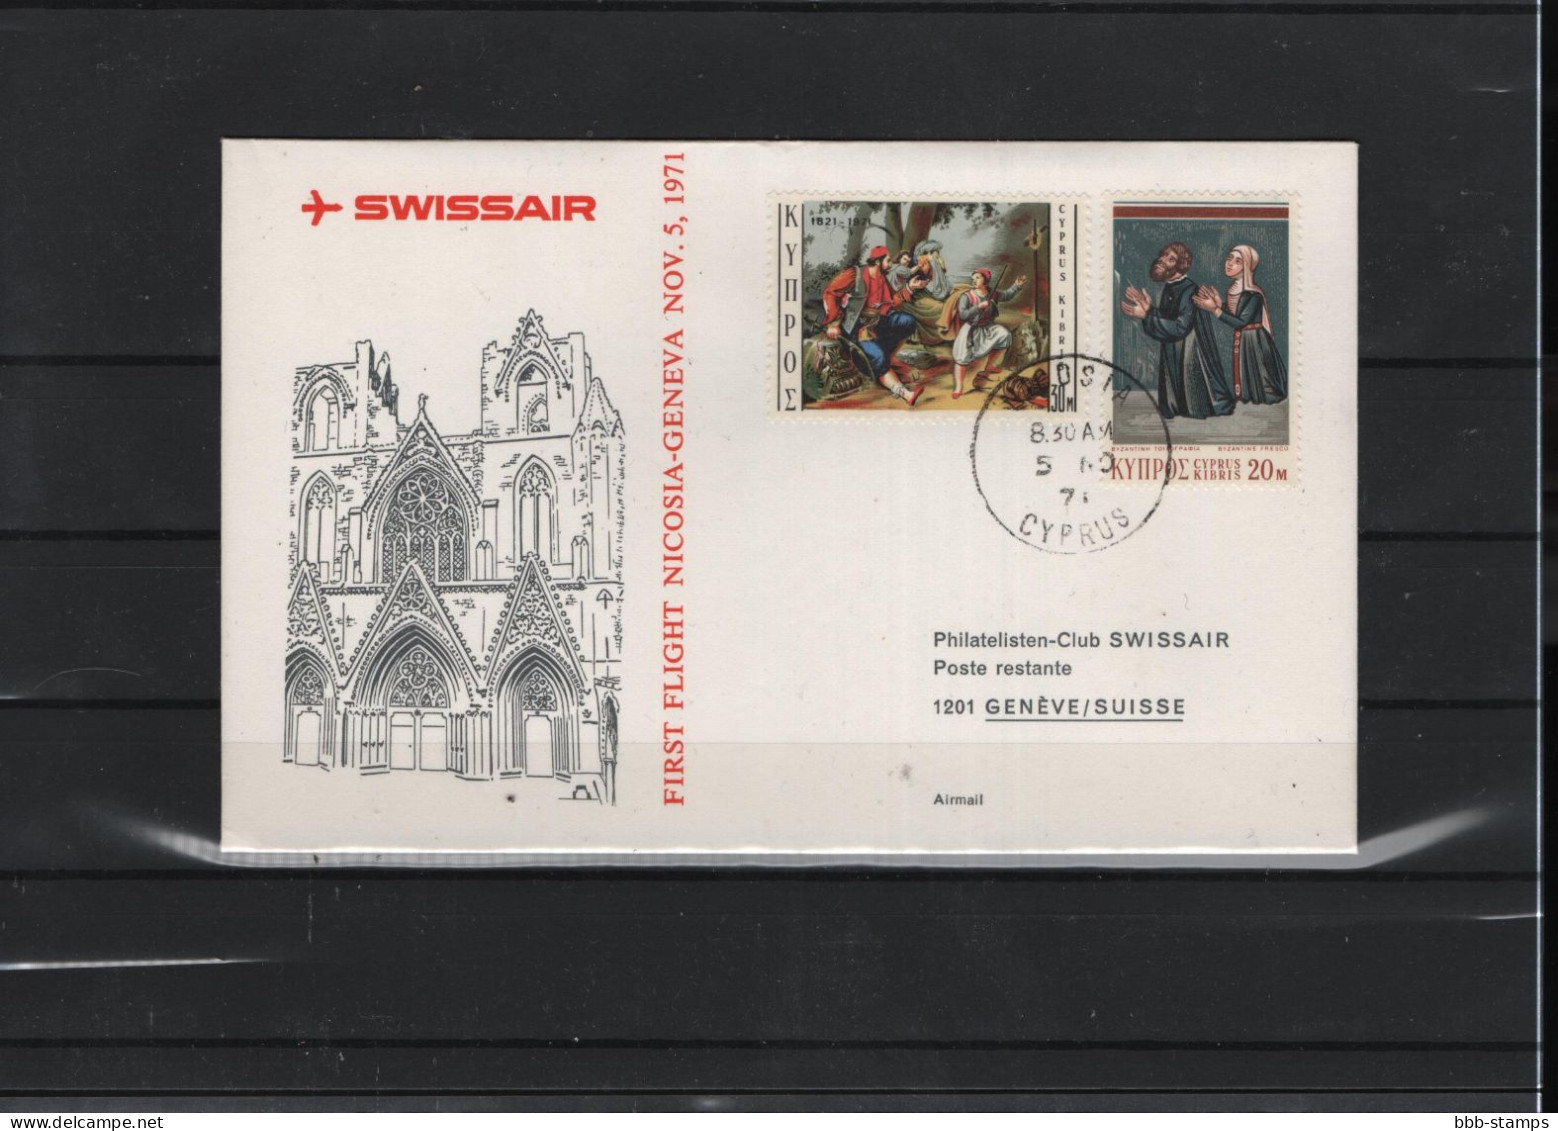 Schweiz Luftpost FFC Swissair  5.11.1971 - Primi Voli